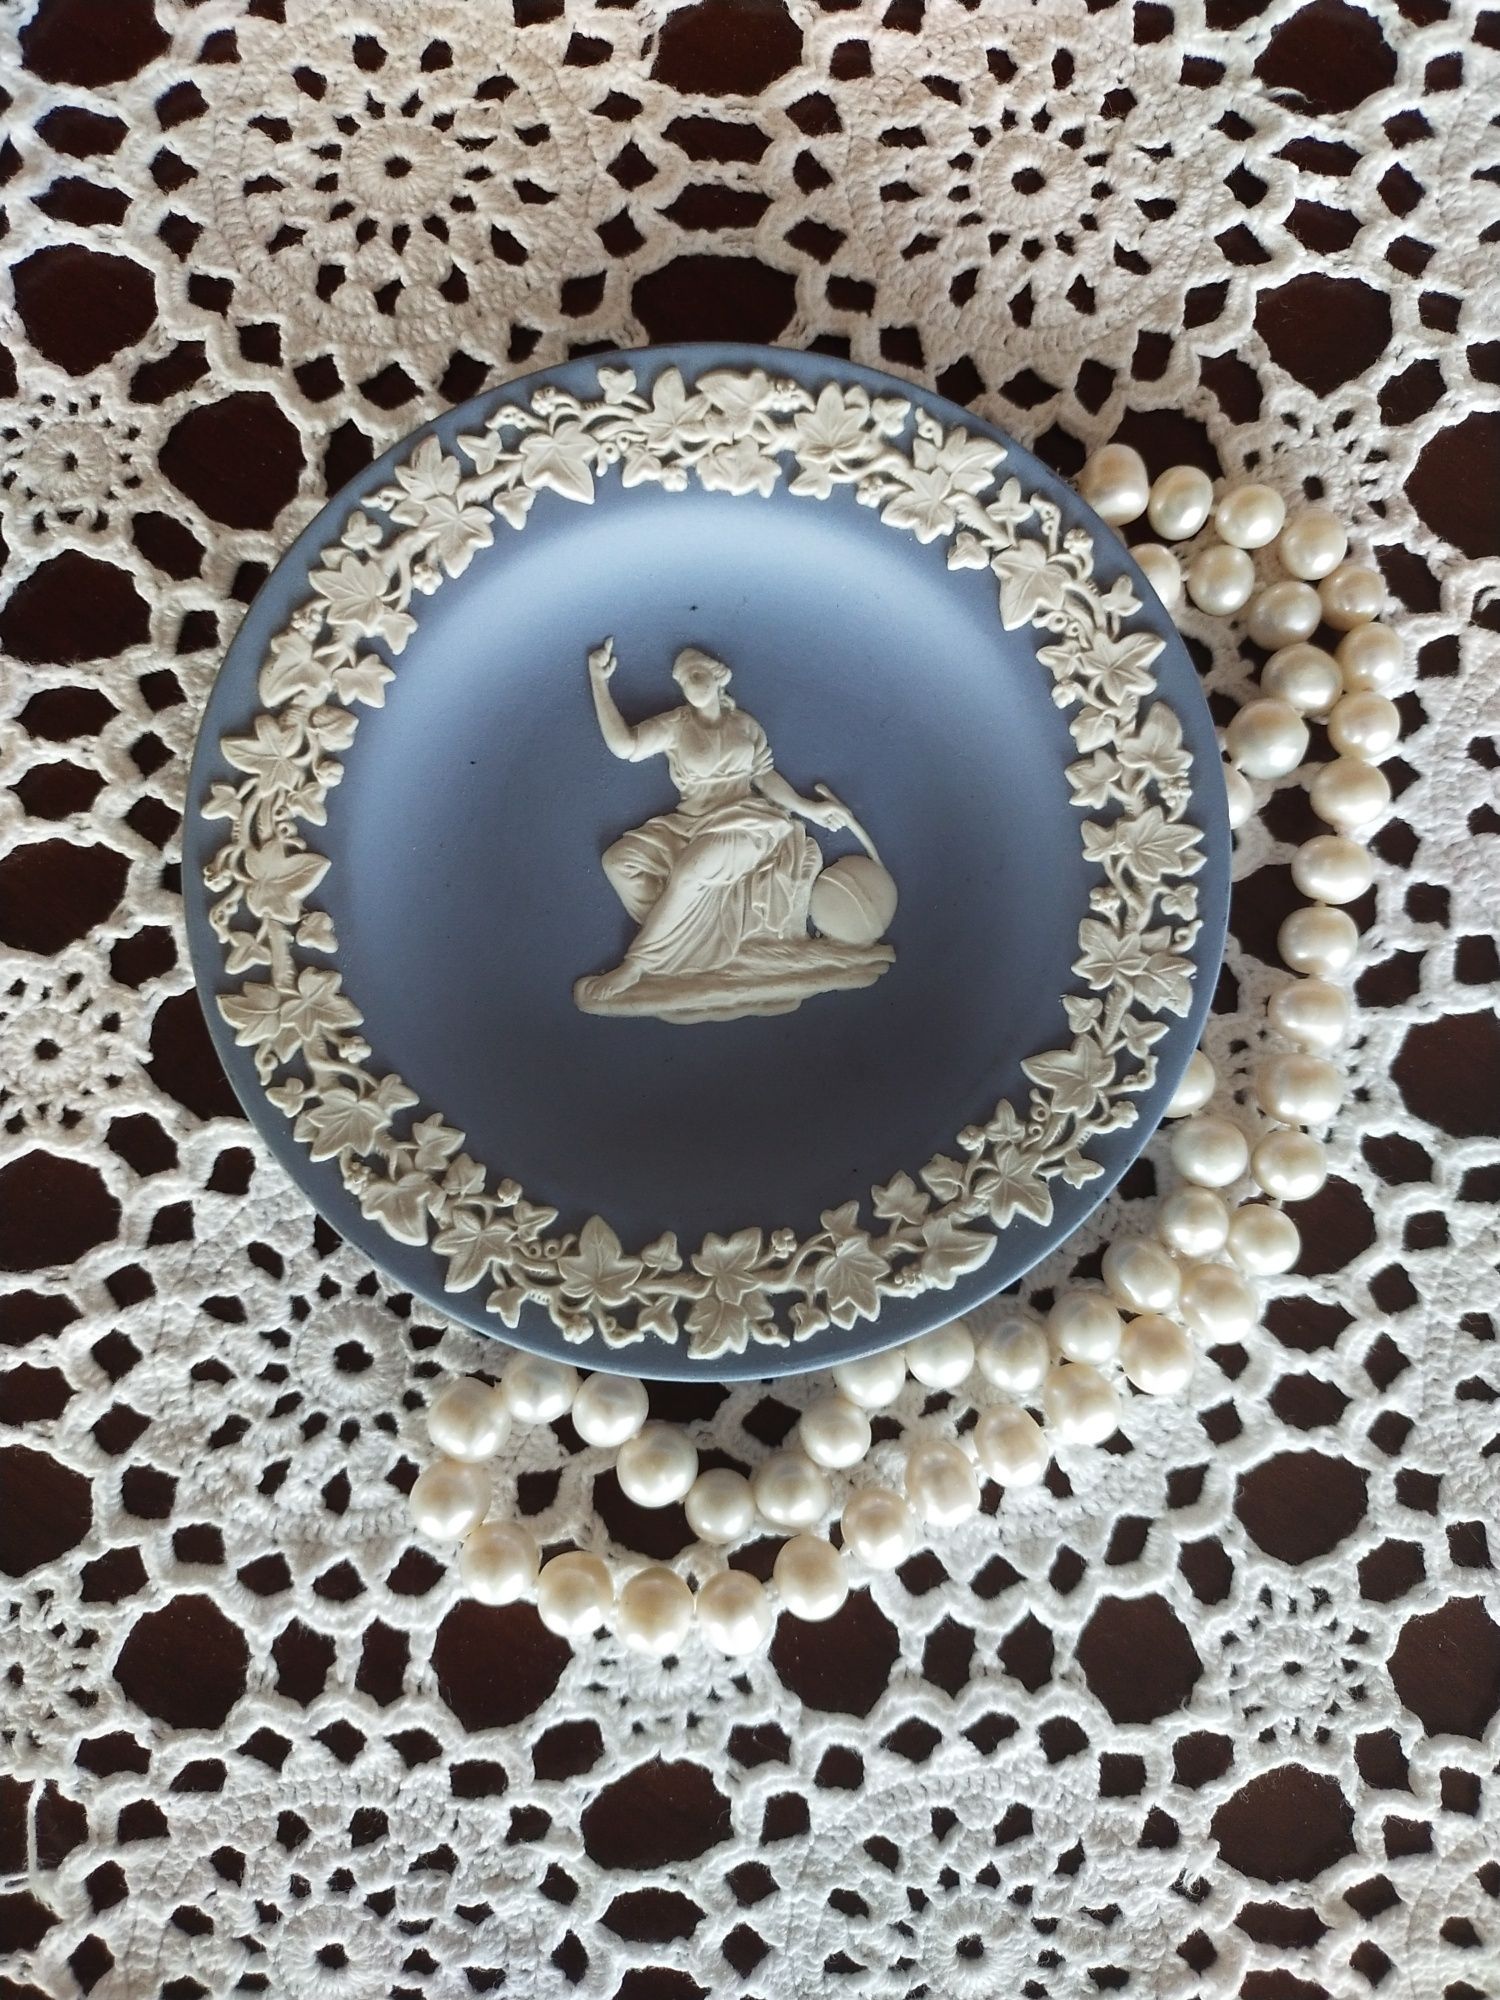 Wedgwood Jasperware Angielska Biskwitowa Ceramika Talerz Vintage

Sprz